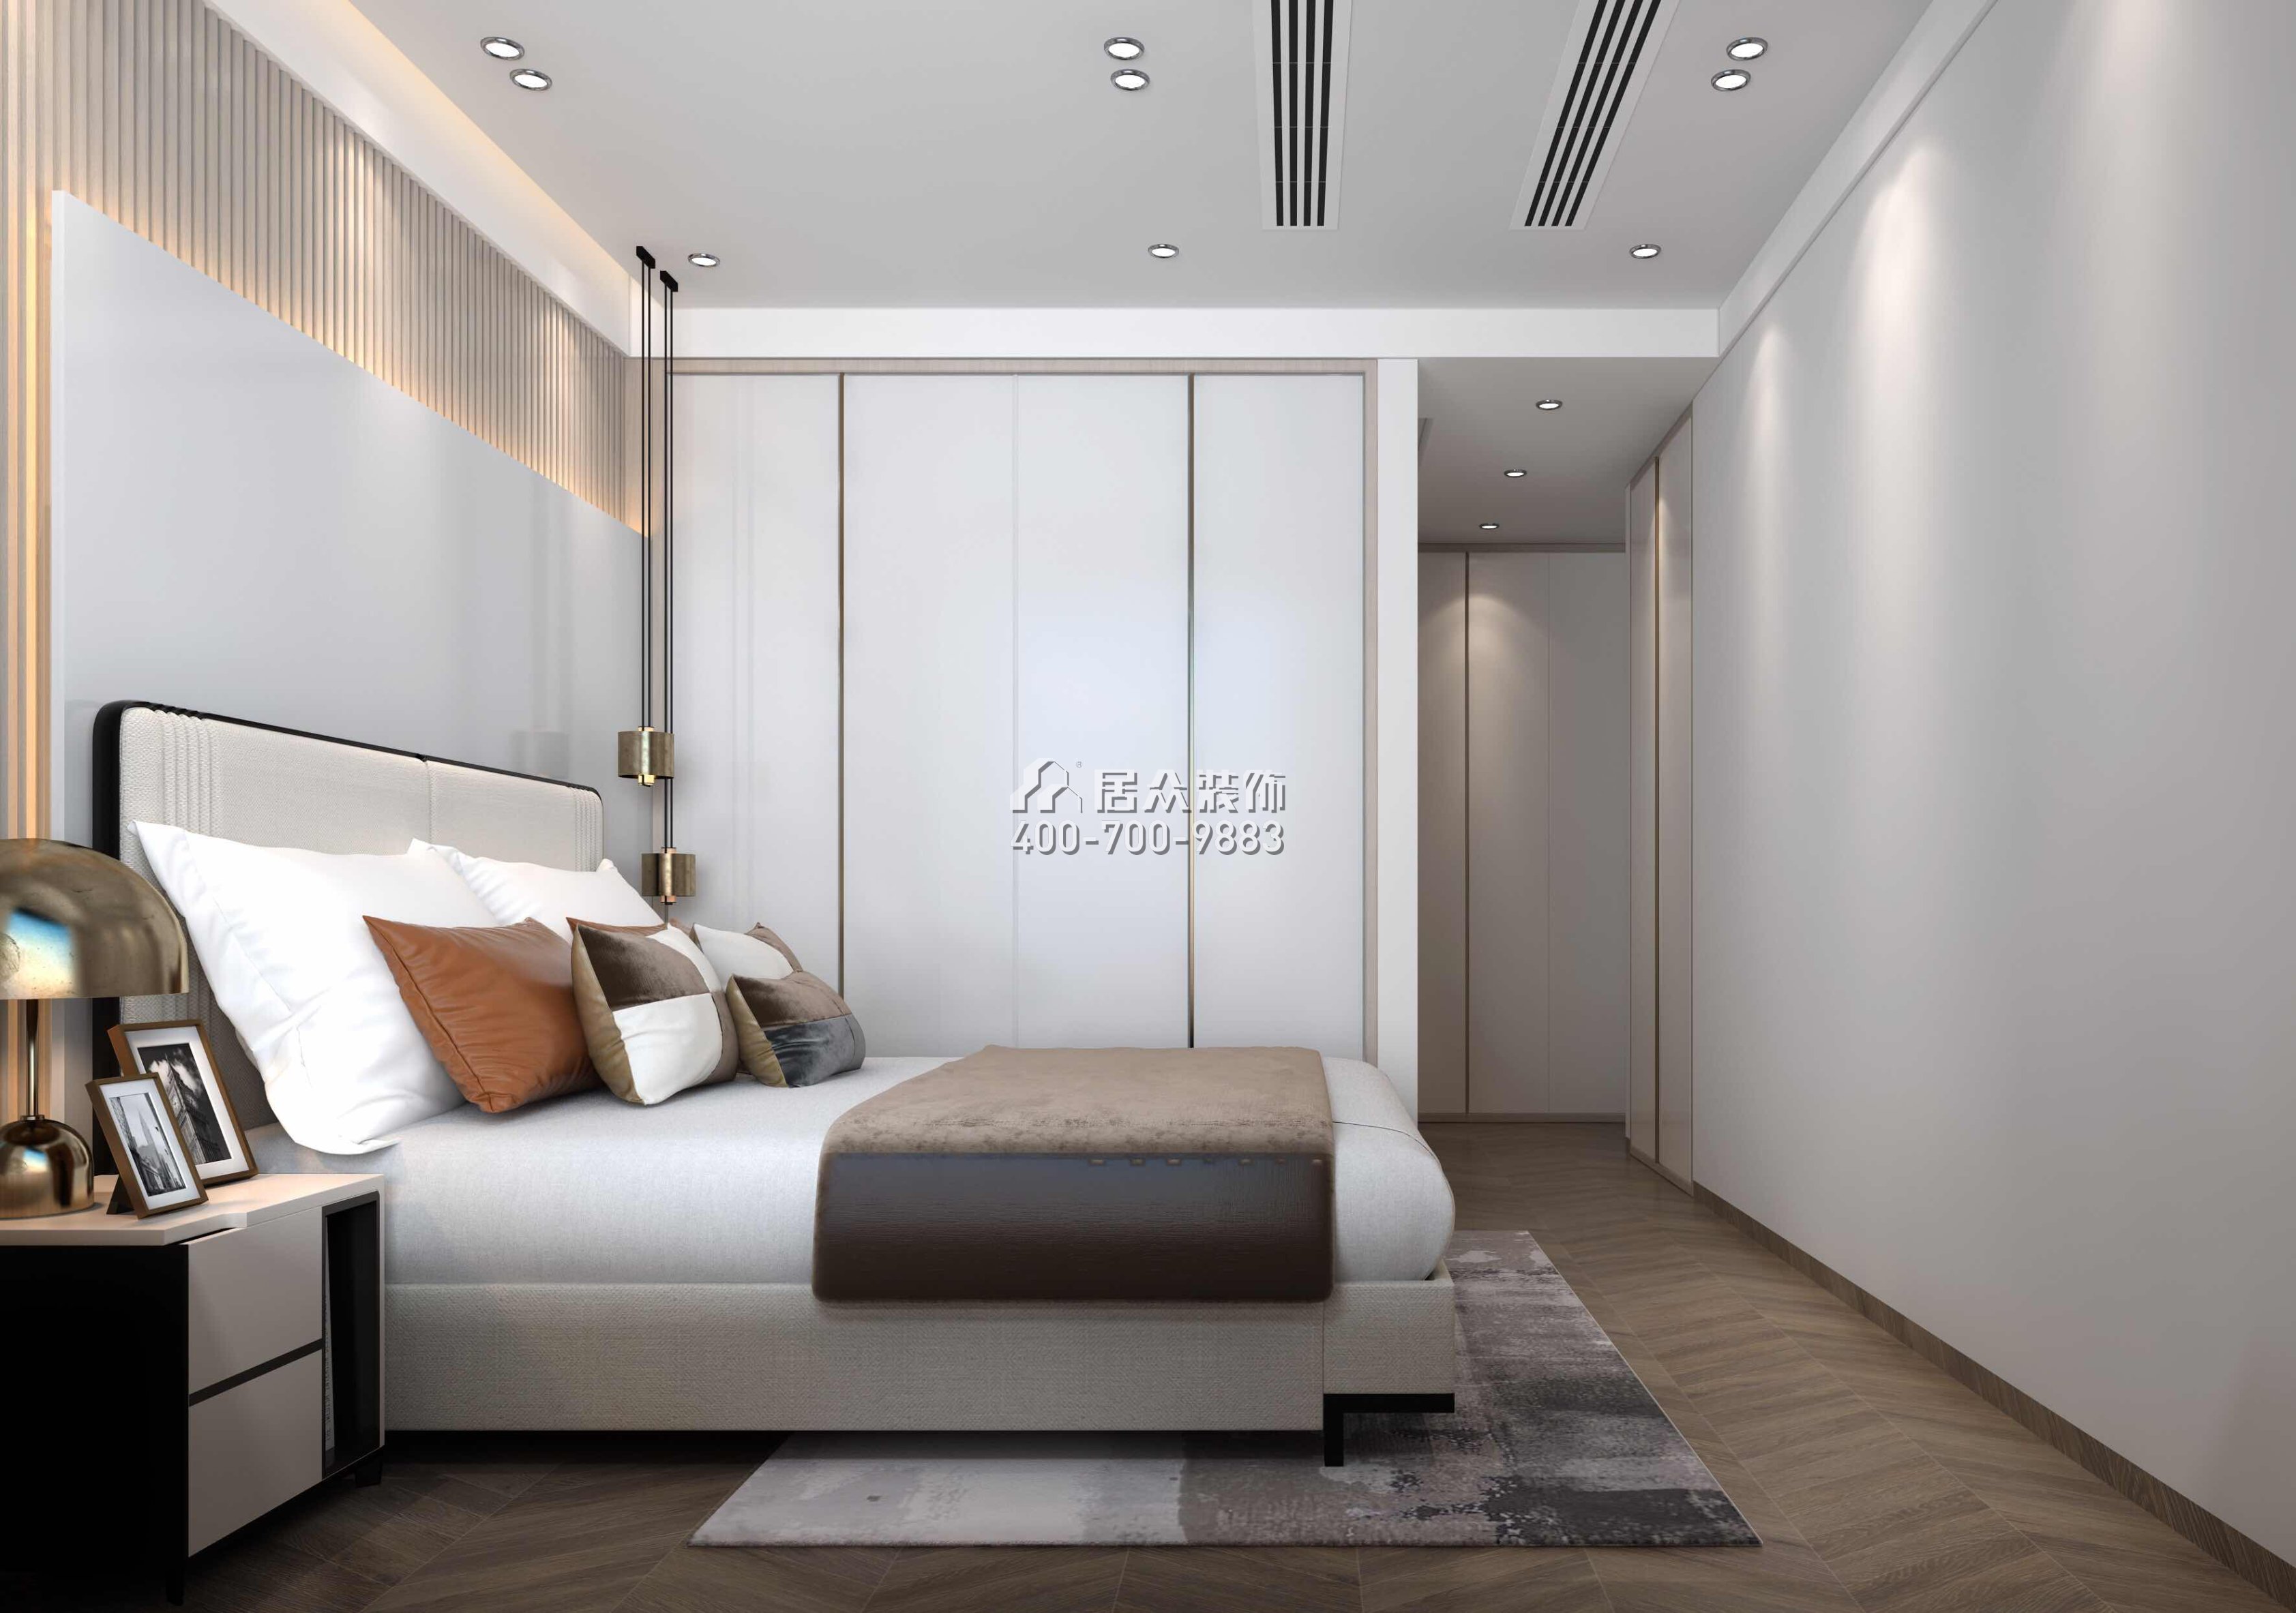 華發廣場悅海灣114平方米現代簡約風格平層戶型臥室裝修效果圖